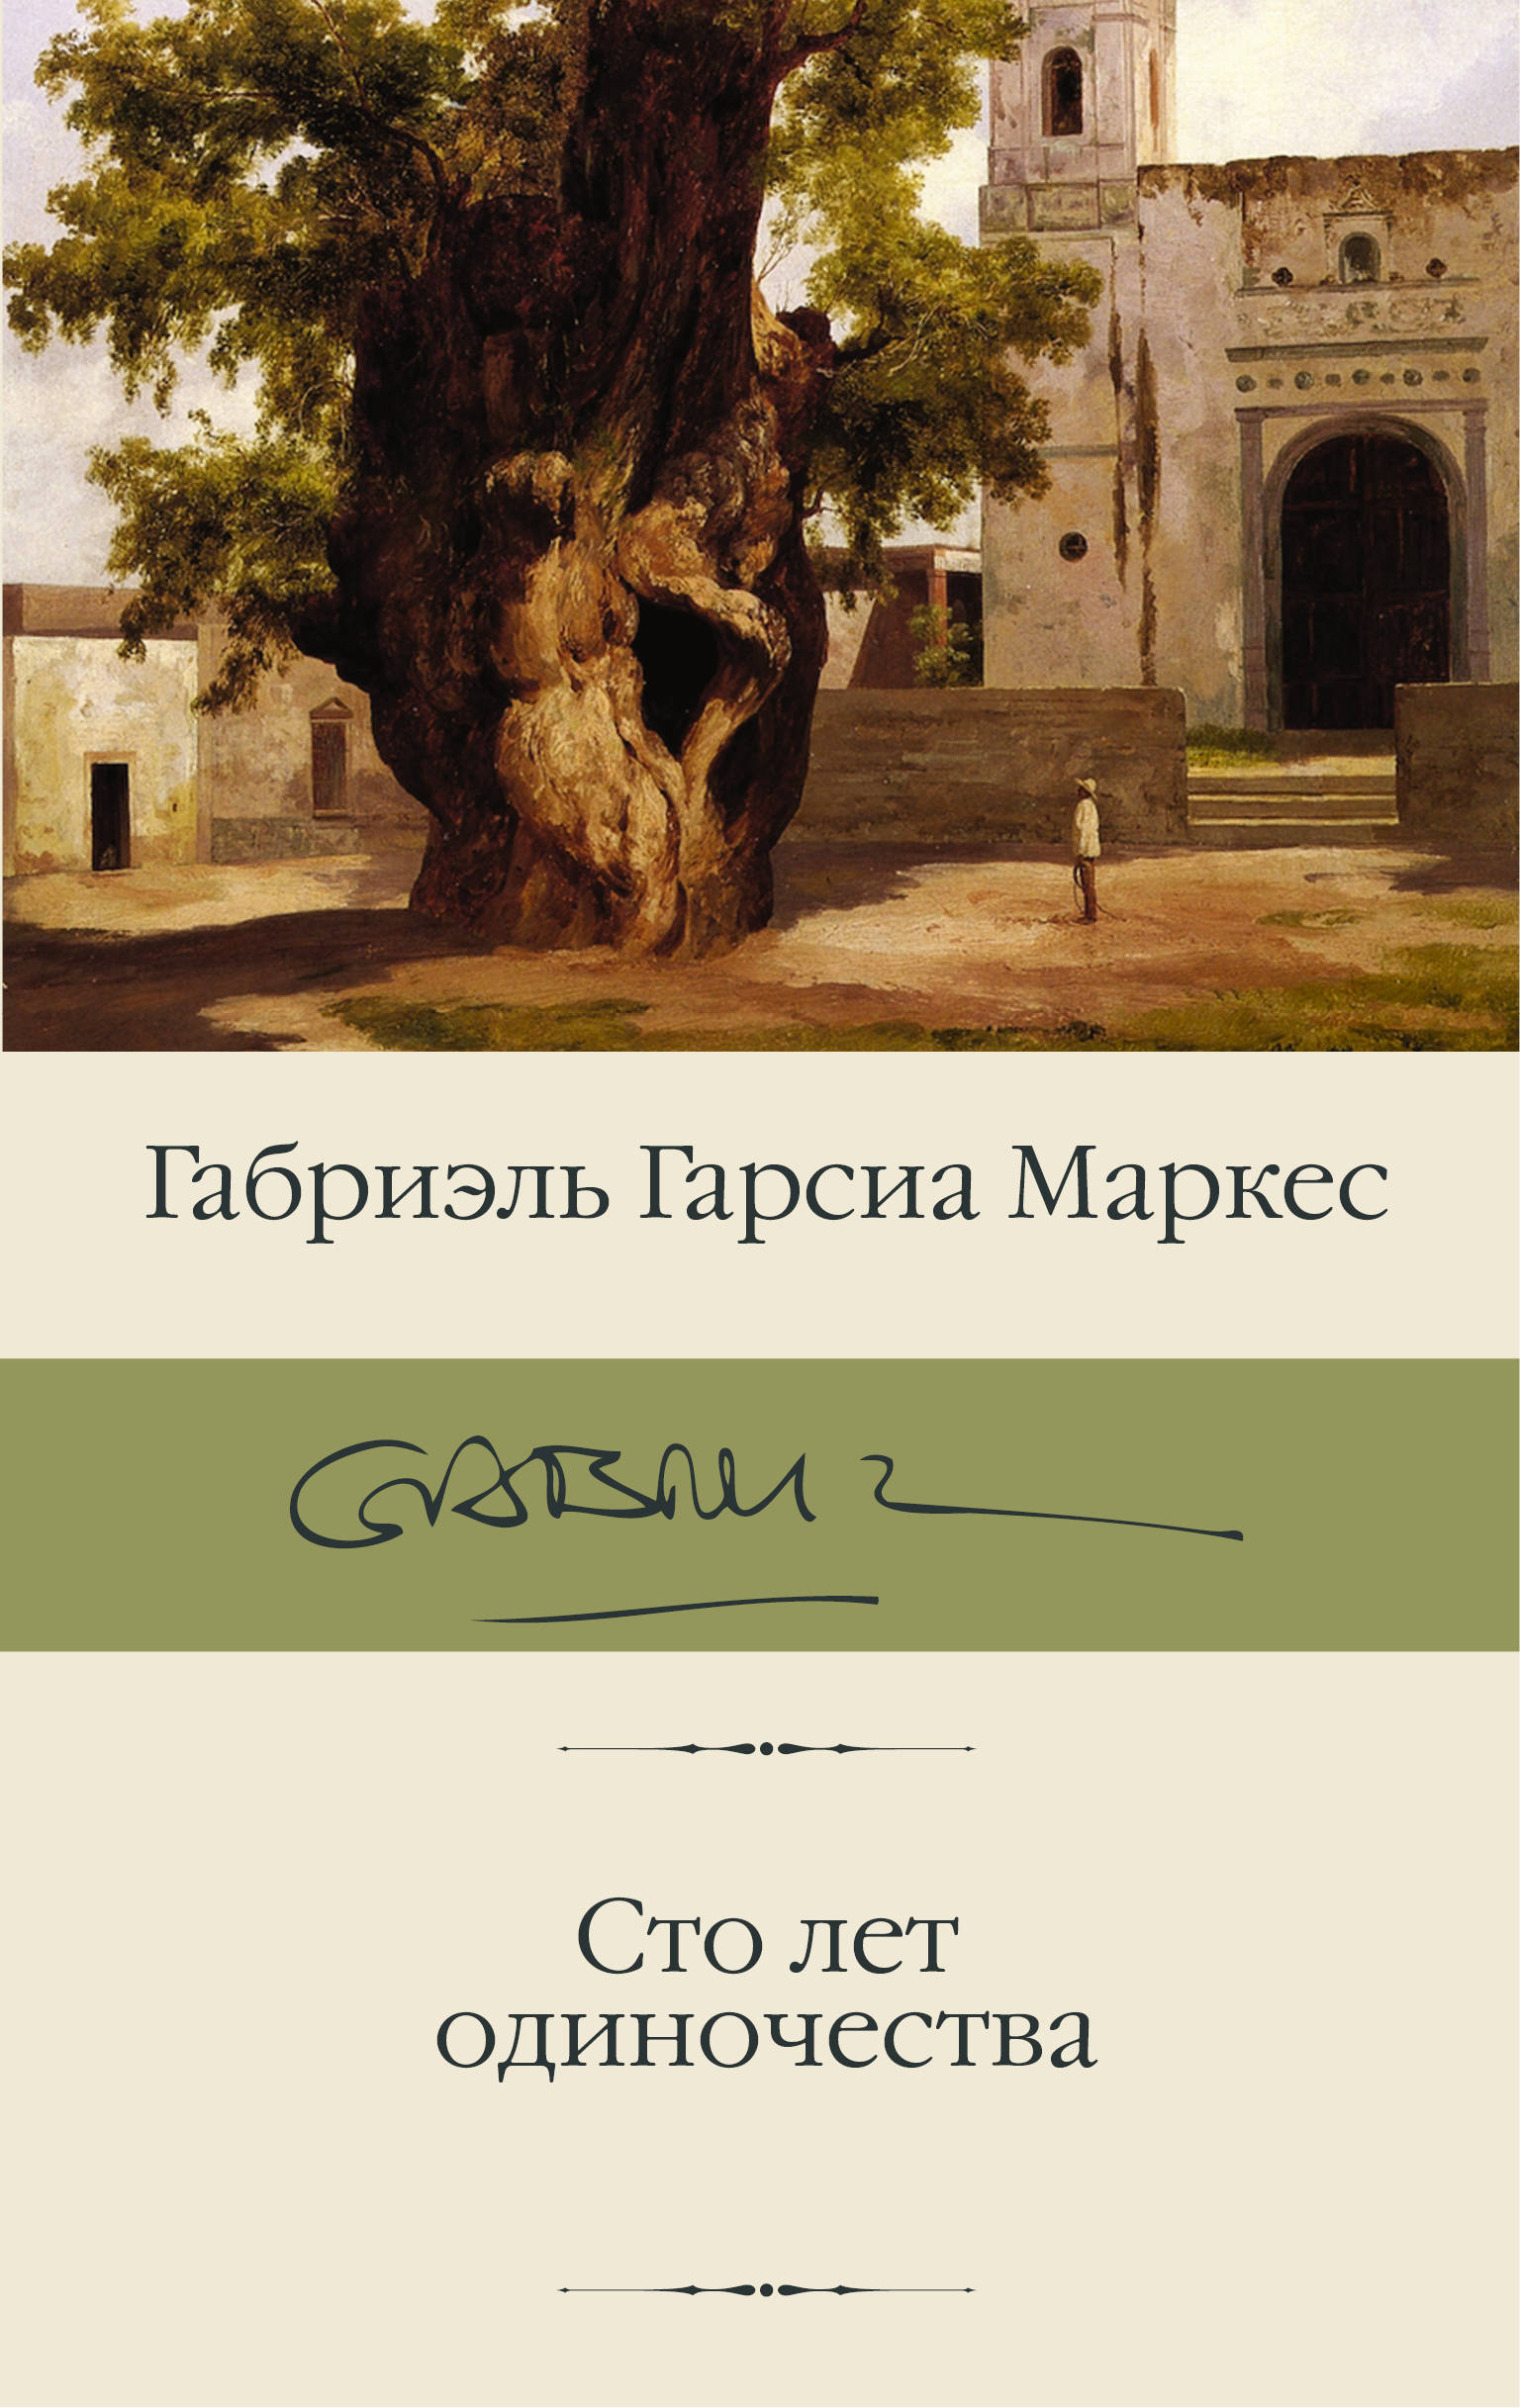 Собрание сочинений Габриэля Гарсия-Маркеса в 7 томах